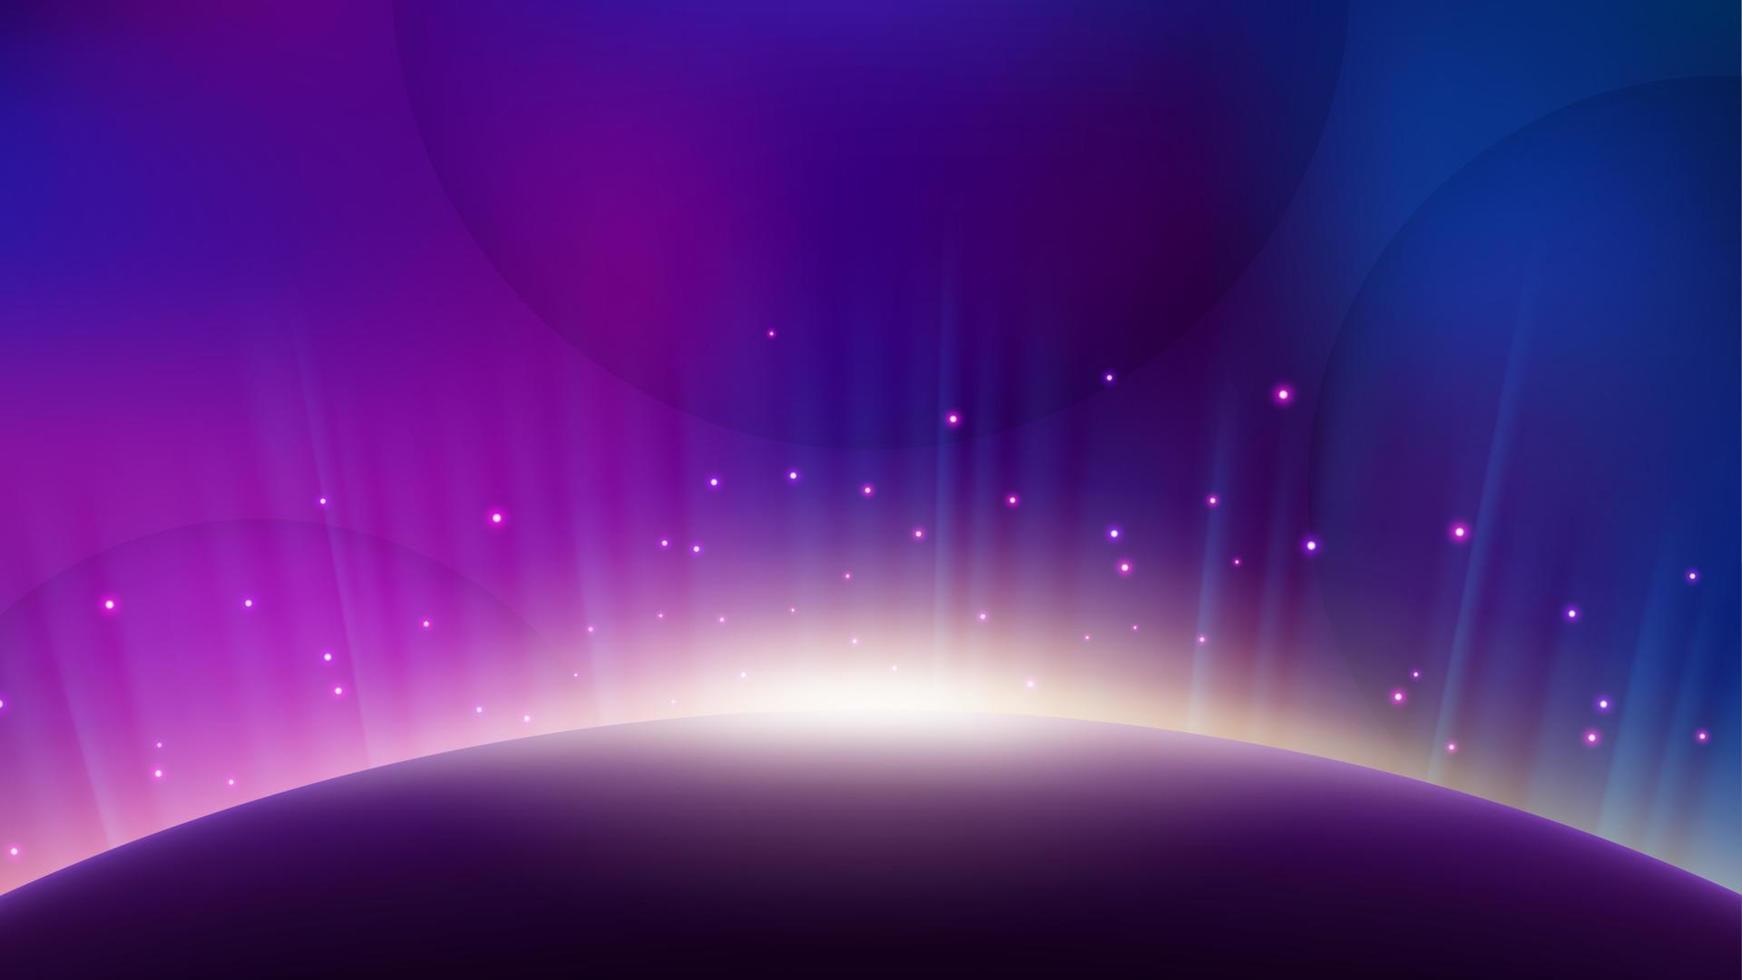 aurora violeta que se eleva desde el horizonte del planeta, fondo brillante. ilustración vectorial de pantalla ancha vector